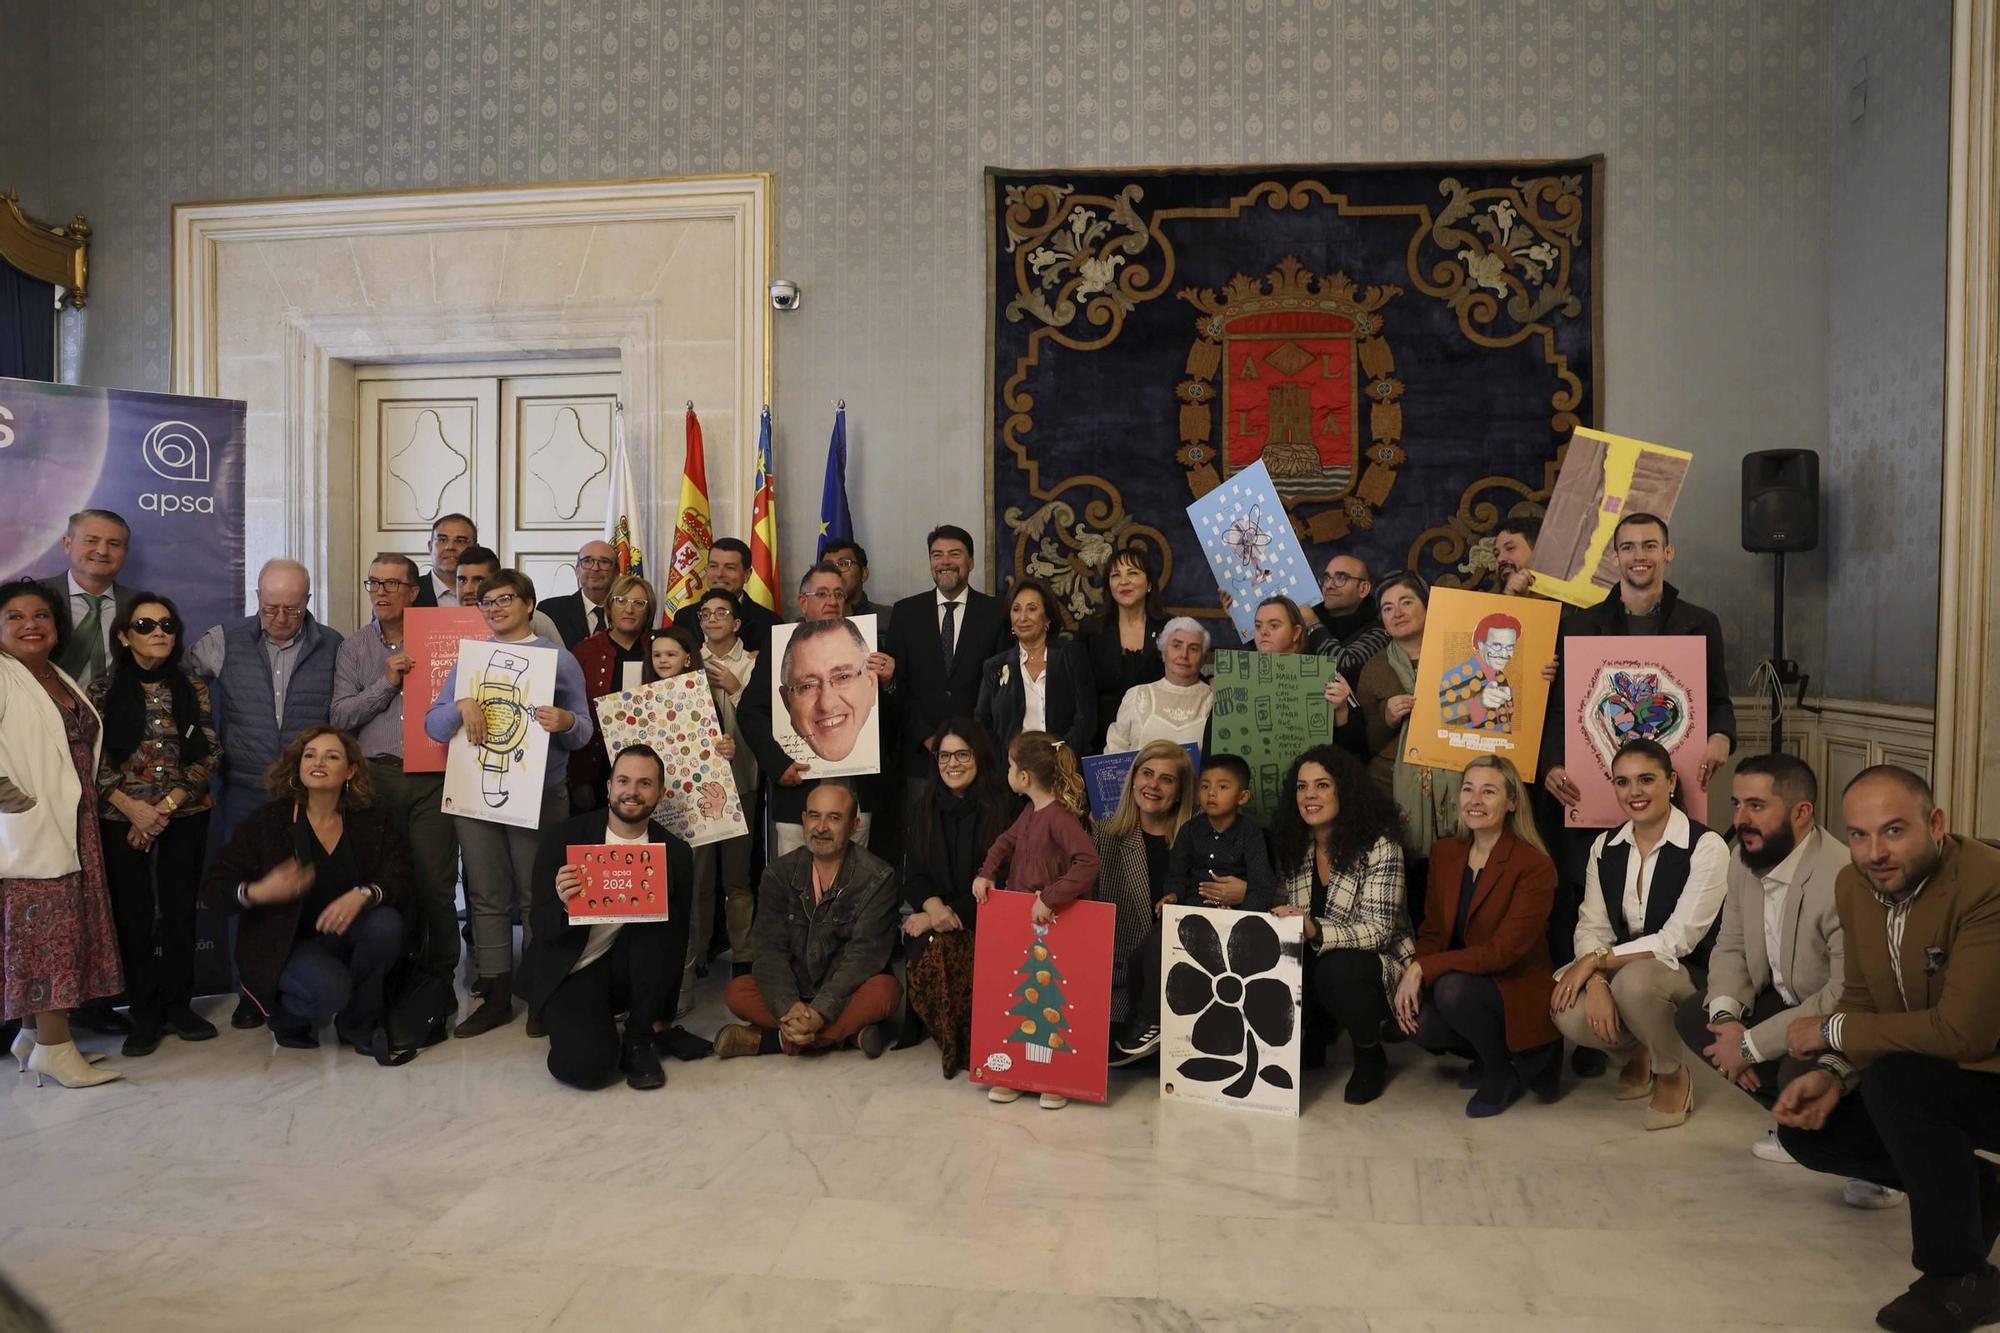 APSA presenta su calendario solidario